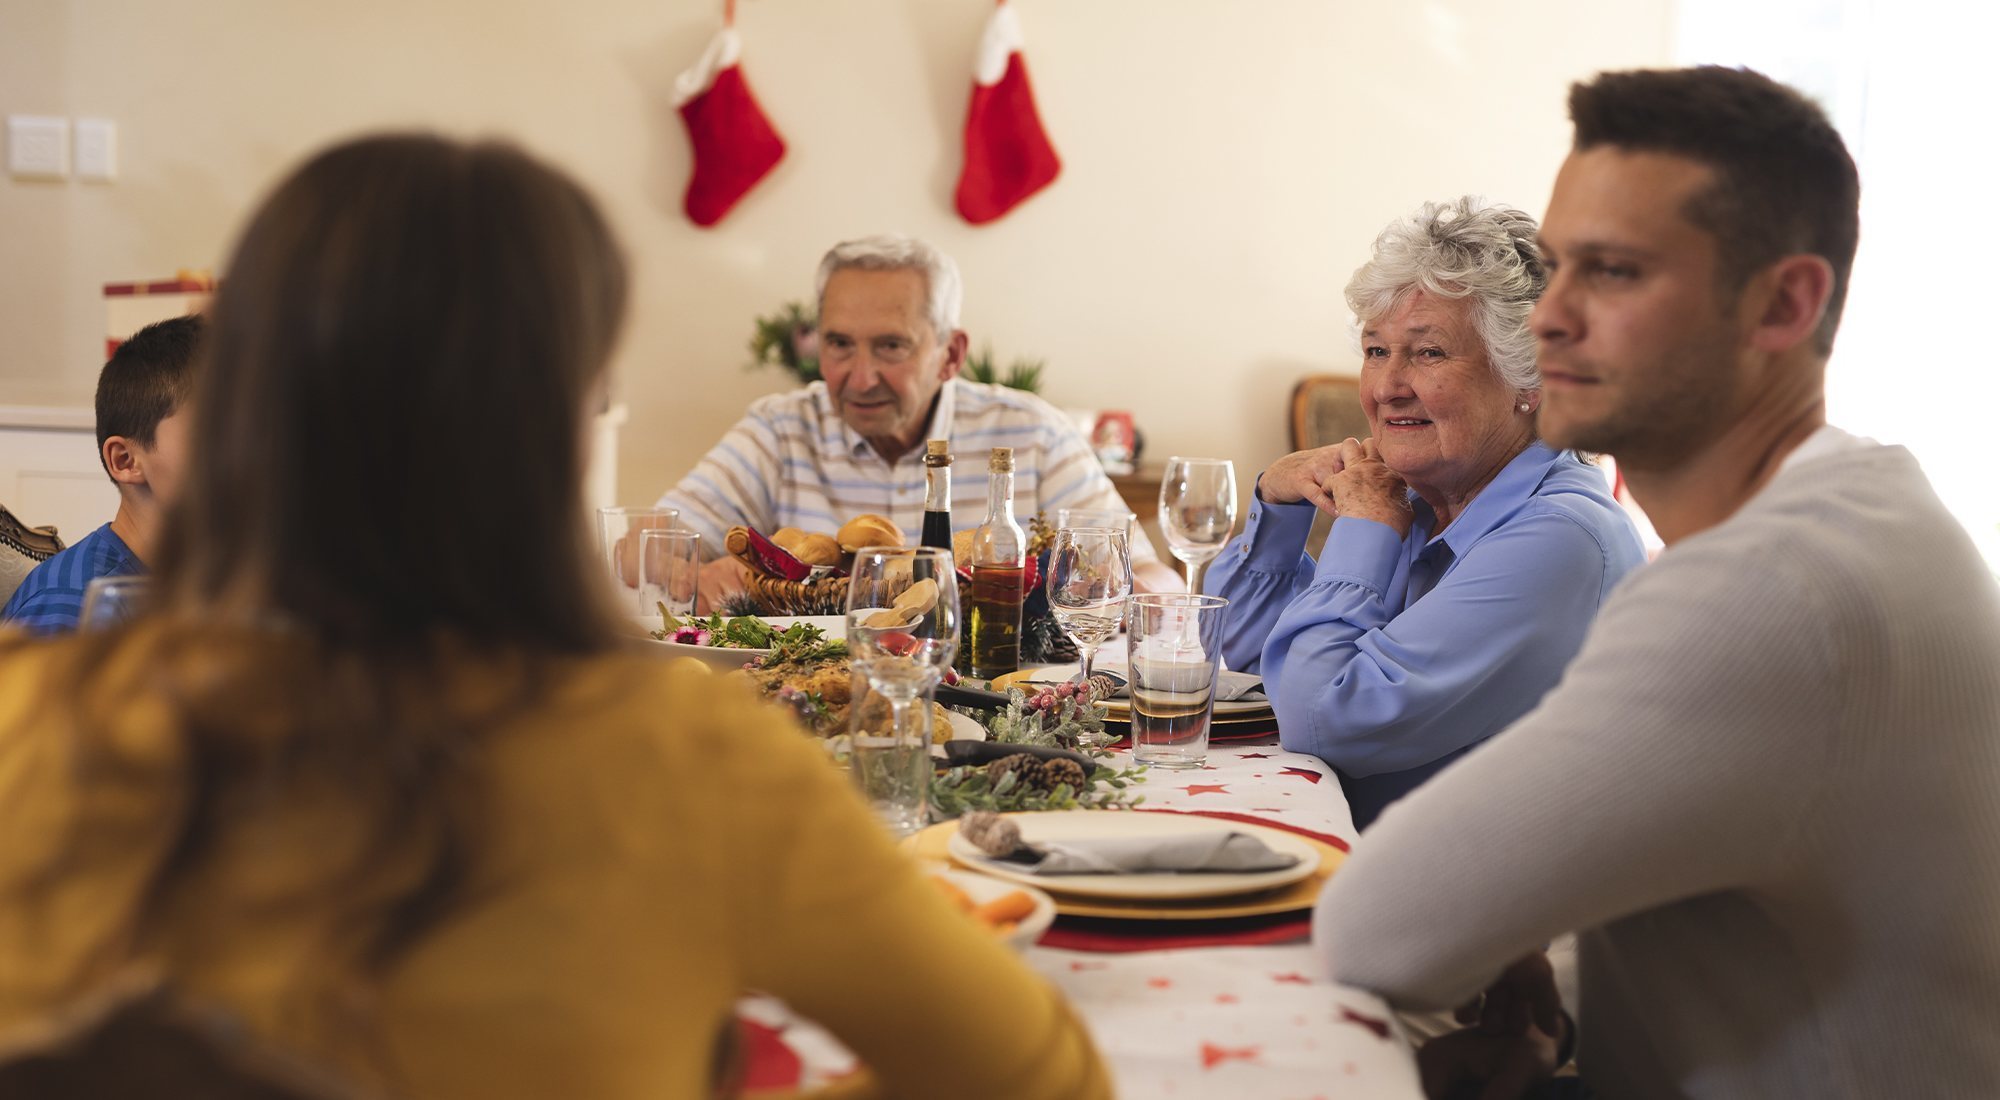 Presentar a tu pareja a la familia en Navidad, el reto del año - MENzig